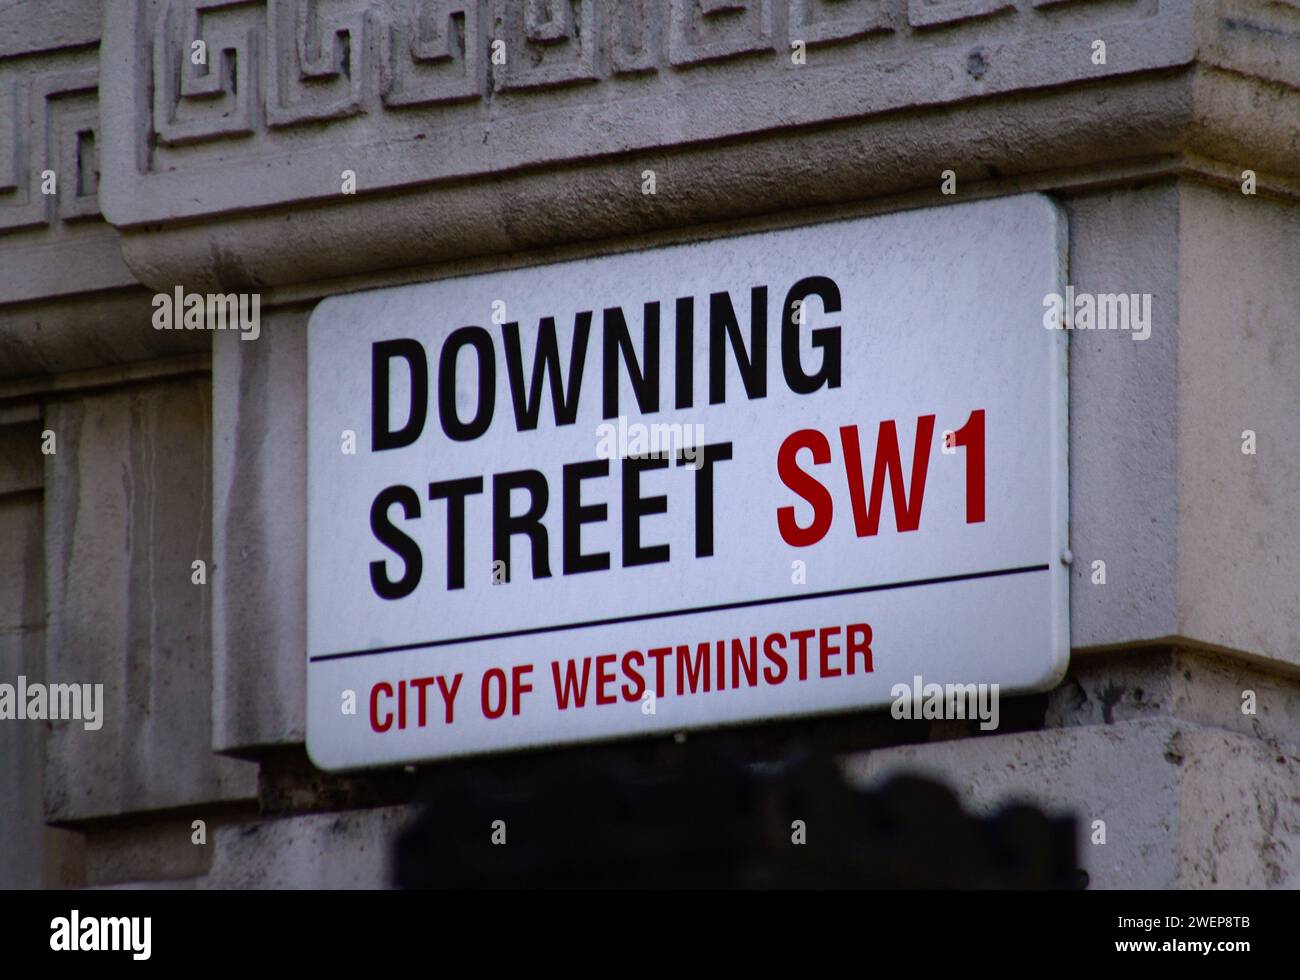 Londra: Legendäre Adresse. - Ein Straßenschild an der wohl berühmtesten Straße Londons: In der Downing Street befindet sich seit mehr als 200 Jahren d Foto Stock